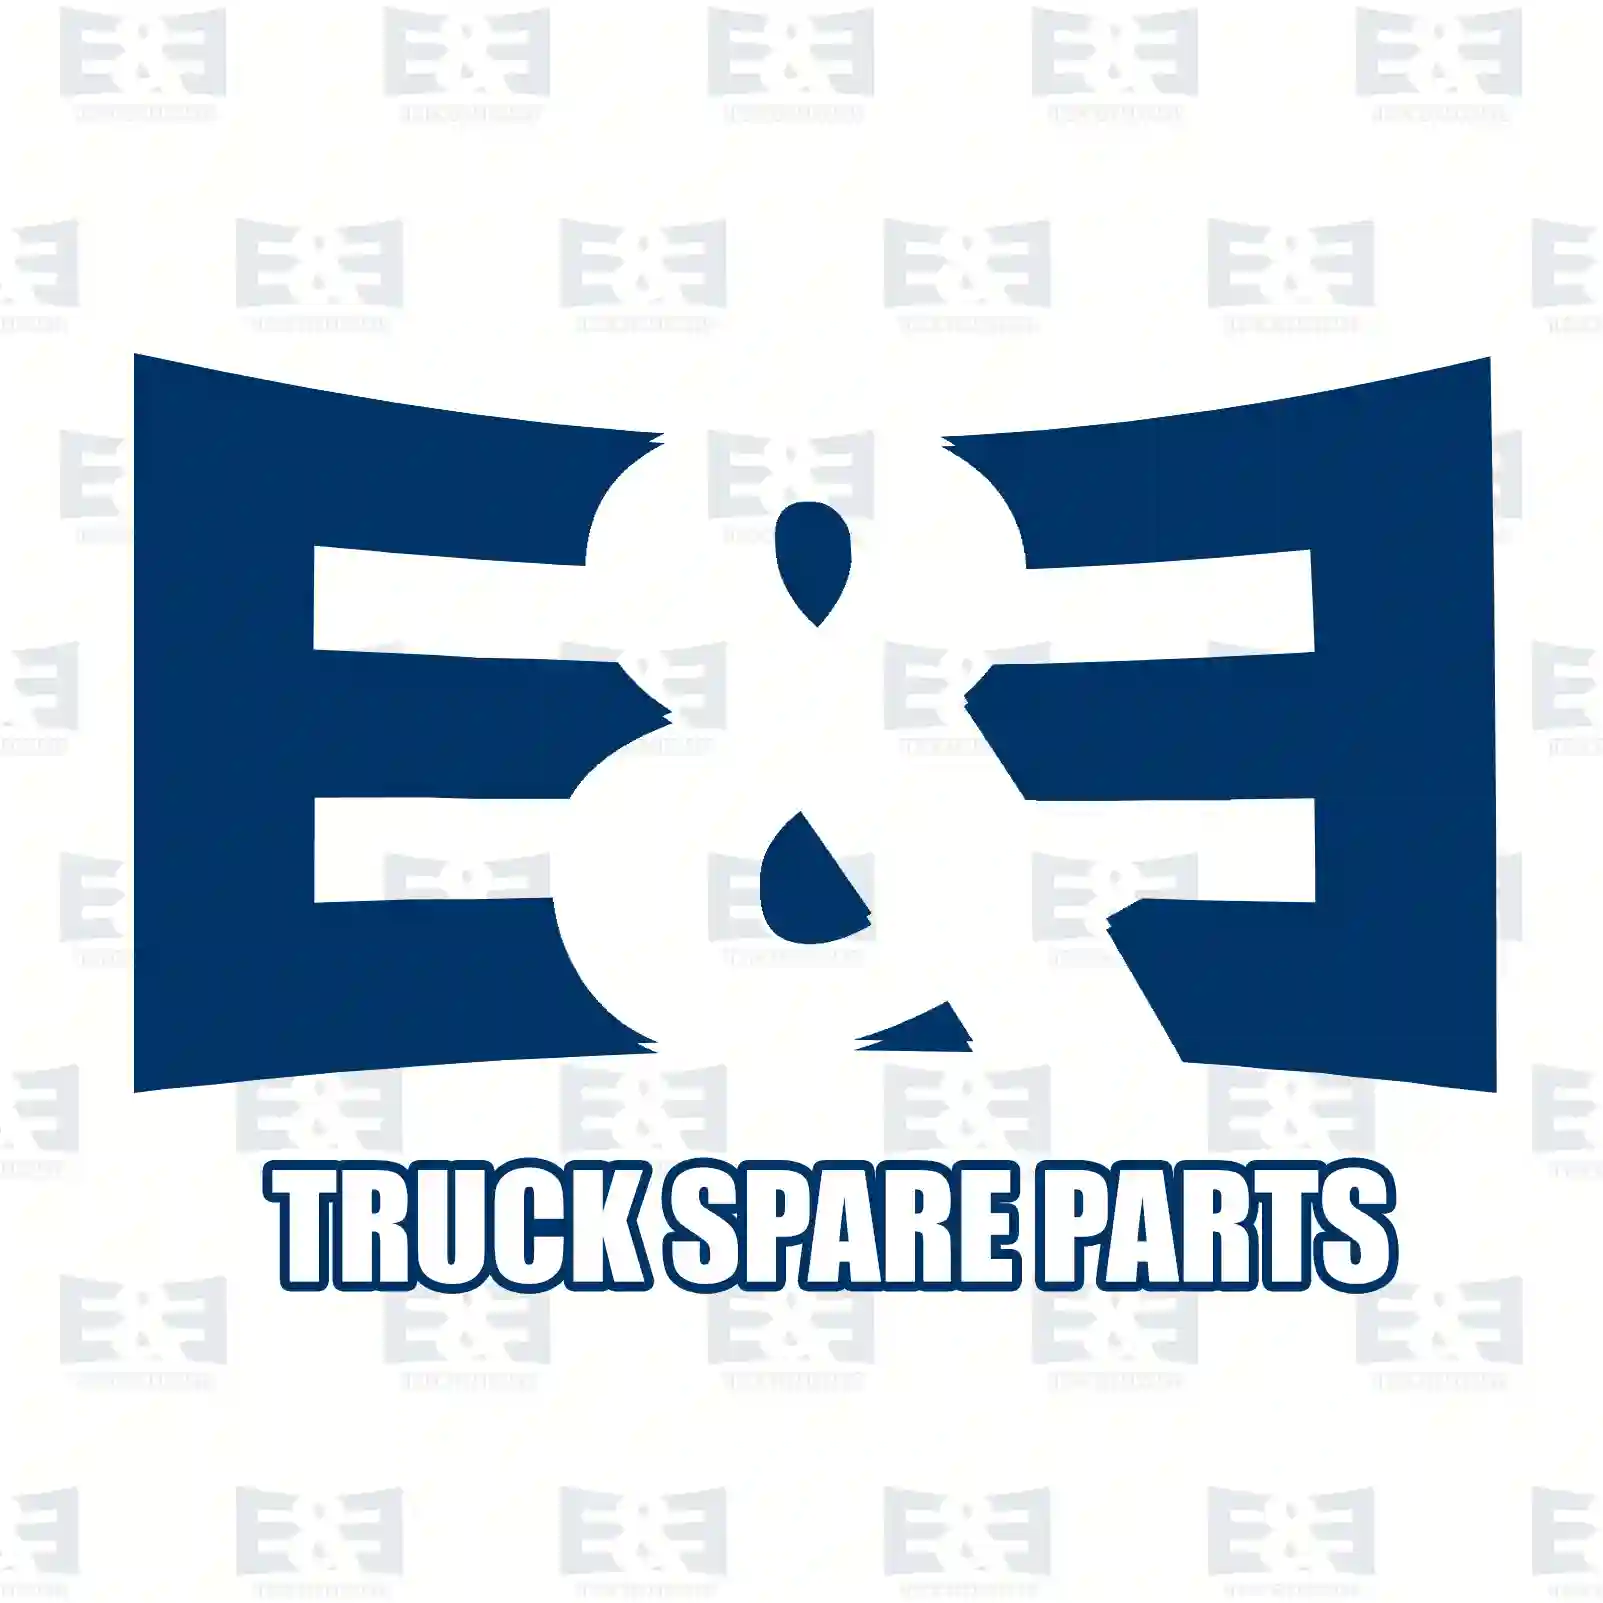 Shock absorber, 2E2281147, 81437016975, 81437026109, , , ||  2E2281147 E&E Truck Spare Parts | Truck Spare Parts, Auotomotive Spare Parts Shock absorber, 2E2281147, 81437016975, 81437026109, , , ||  2E2281147 E&E Truck Spare Parts | Truck Spare Parts, Auotomotive Spare Parts